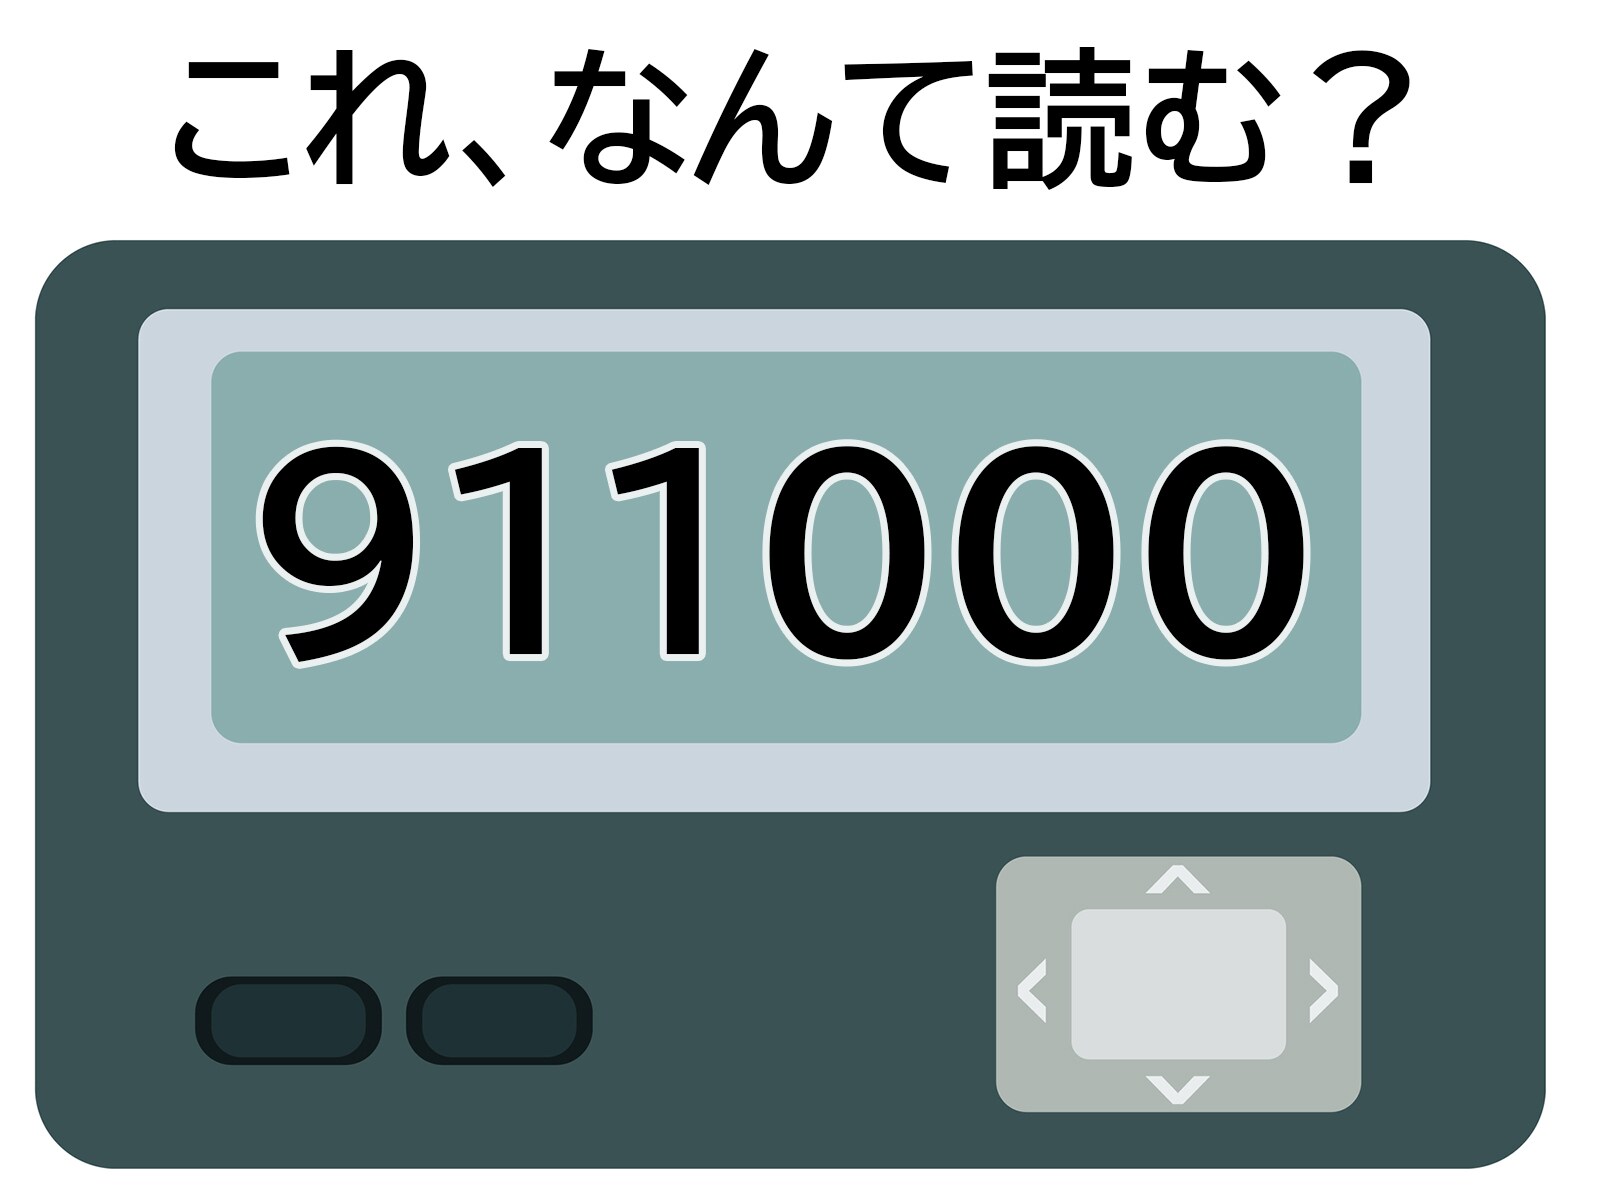 「911000」はなんて読む？ 関西出身なら分かるかも！ 【ポケベル暗号クイズ】